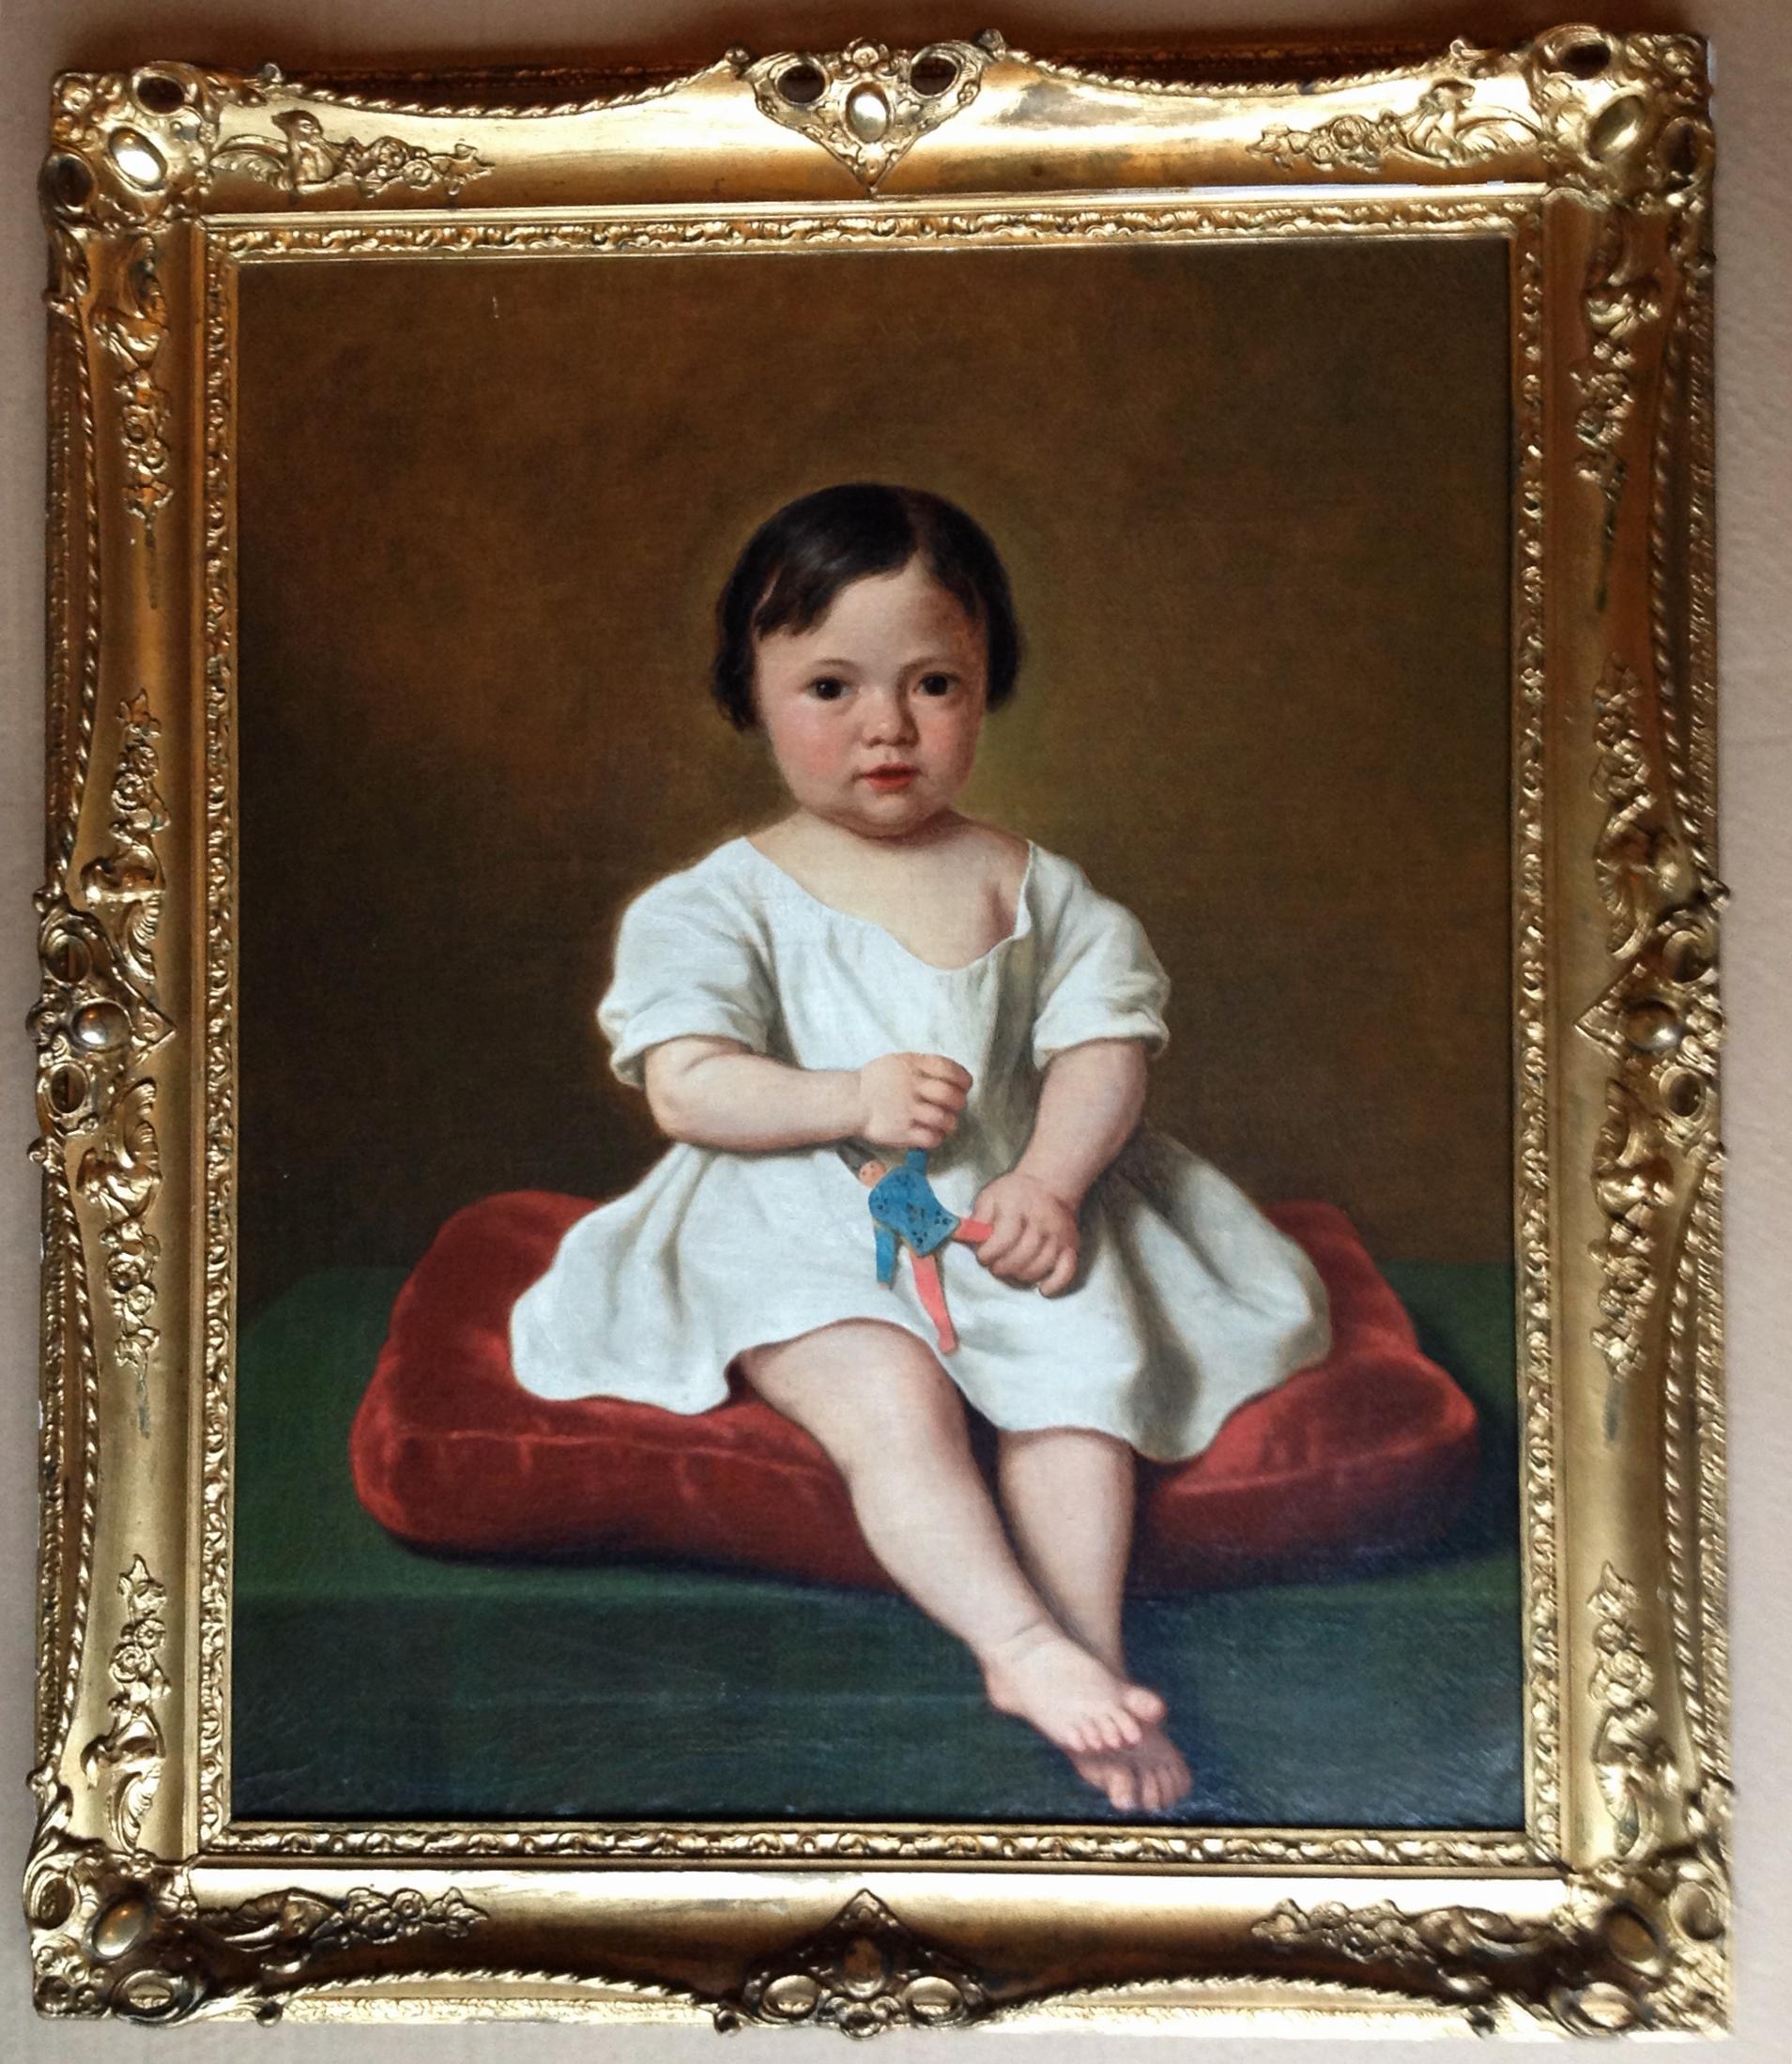 Basile de Loose
Portrait d'un enfant
signé et daté "1861

Basile De Loose (17 décembre 1809 - 24 octobre 1885) était un peintre belge.

Il est né à Zele, en Flandre orientale, au Royaume-Uni des Pays-Bas, le 17 décembre 1809, de Johannes Josephus de